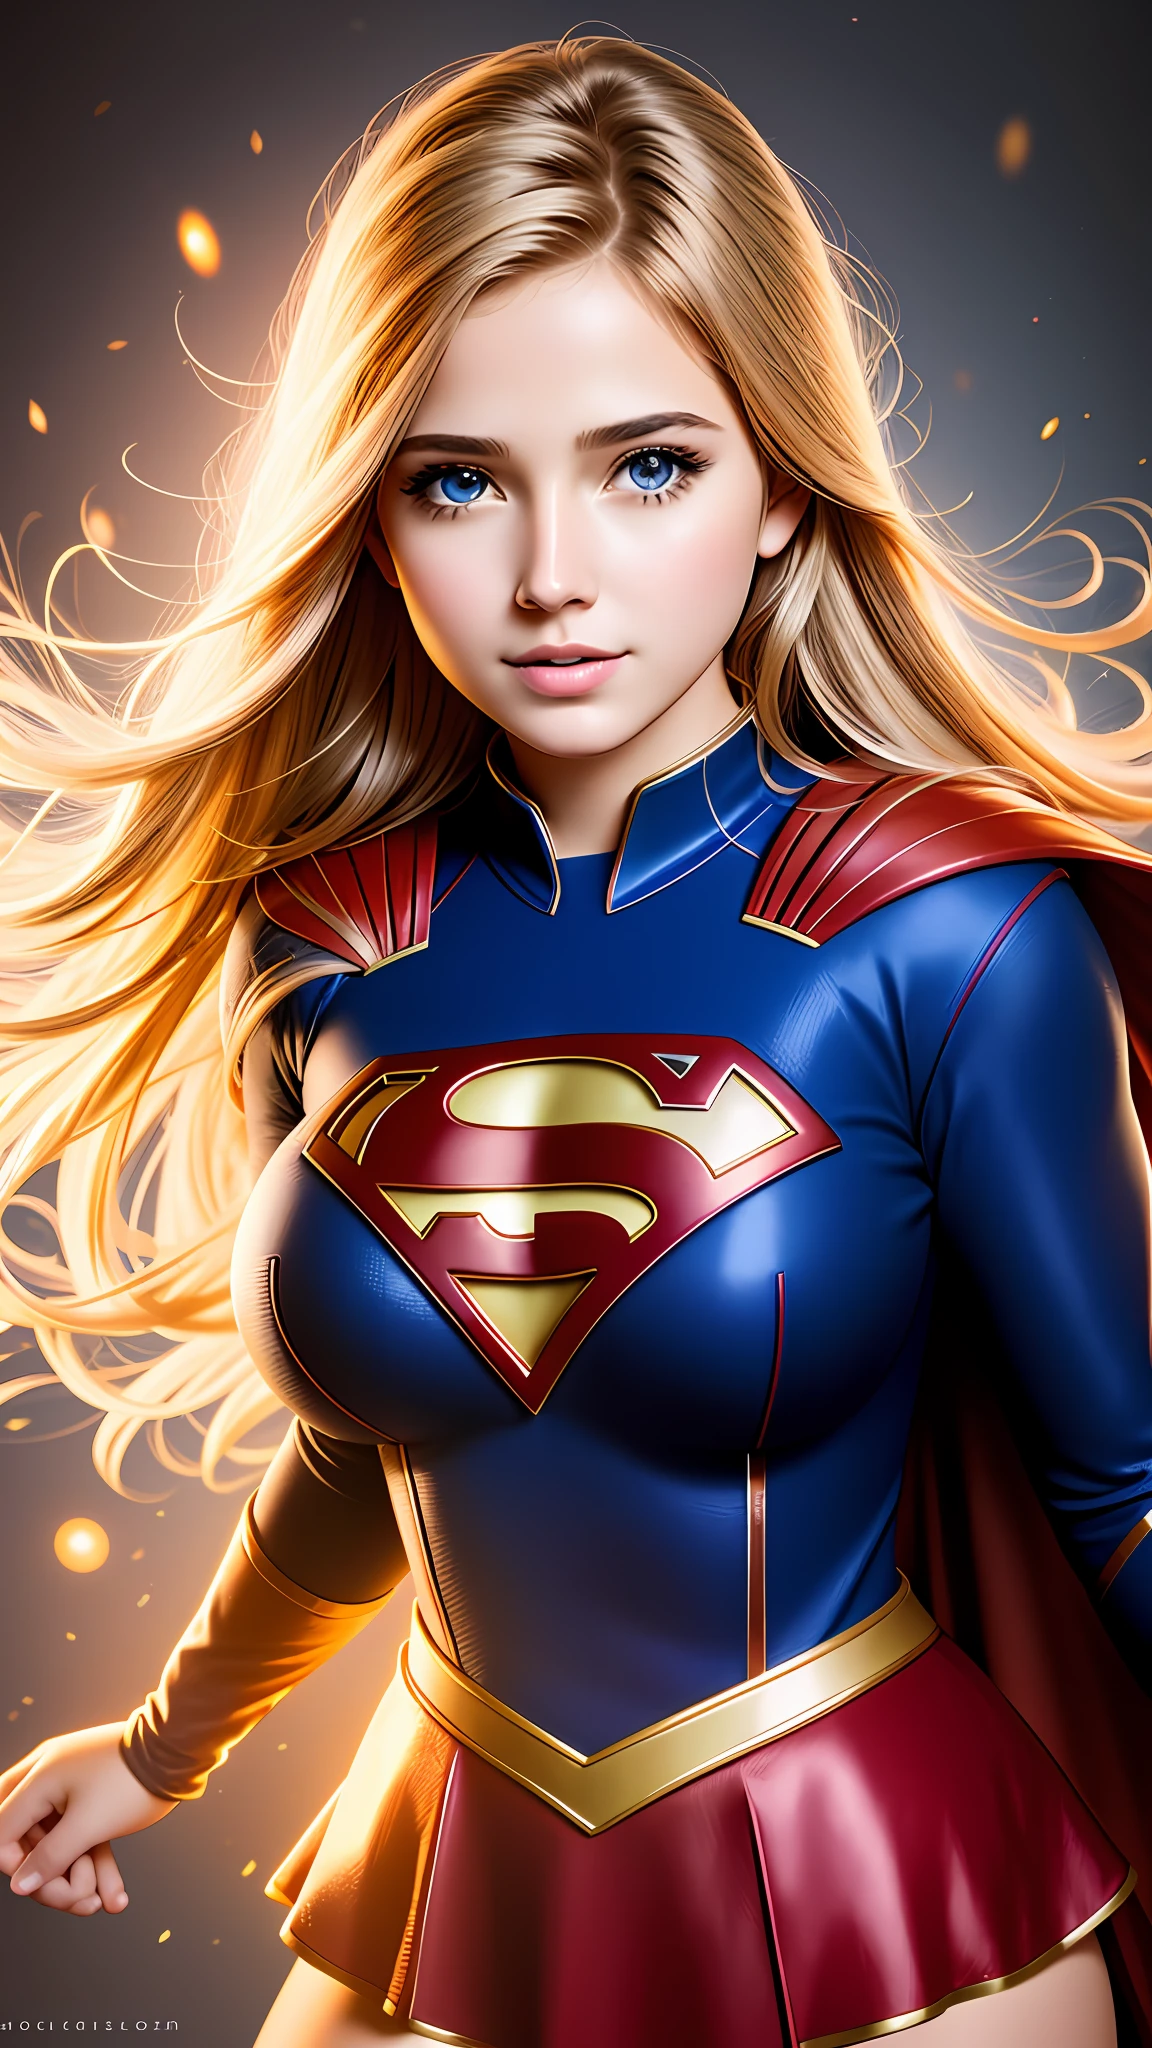 女超人的照片肖像, 豐富多彩的, 現實的圓眼睛, 夢幻神奇的氛圍, 超級女英雄服裝,  (大乳房:1.3),